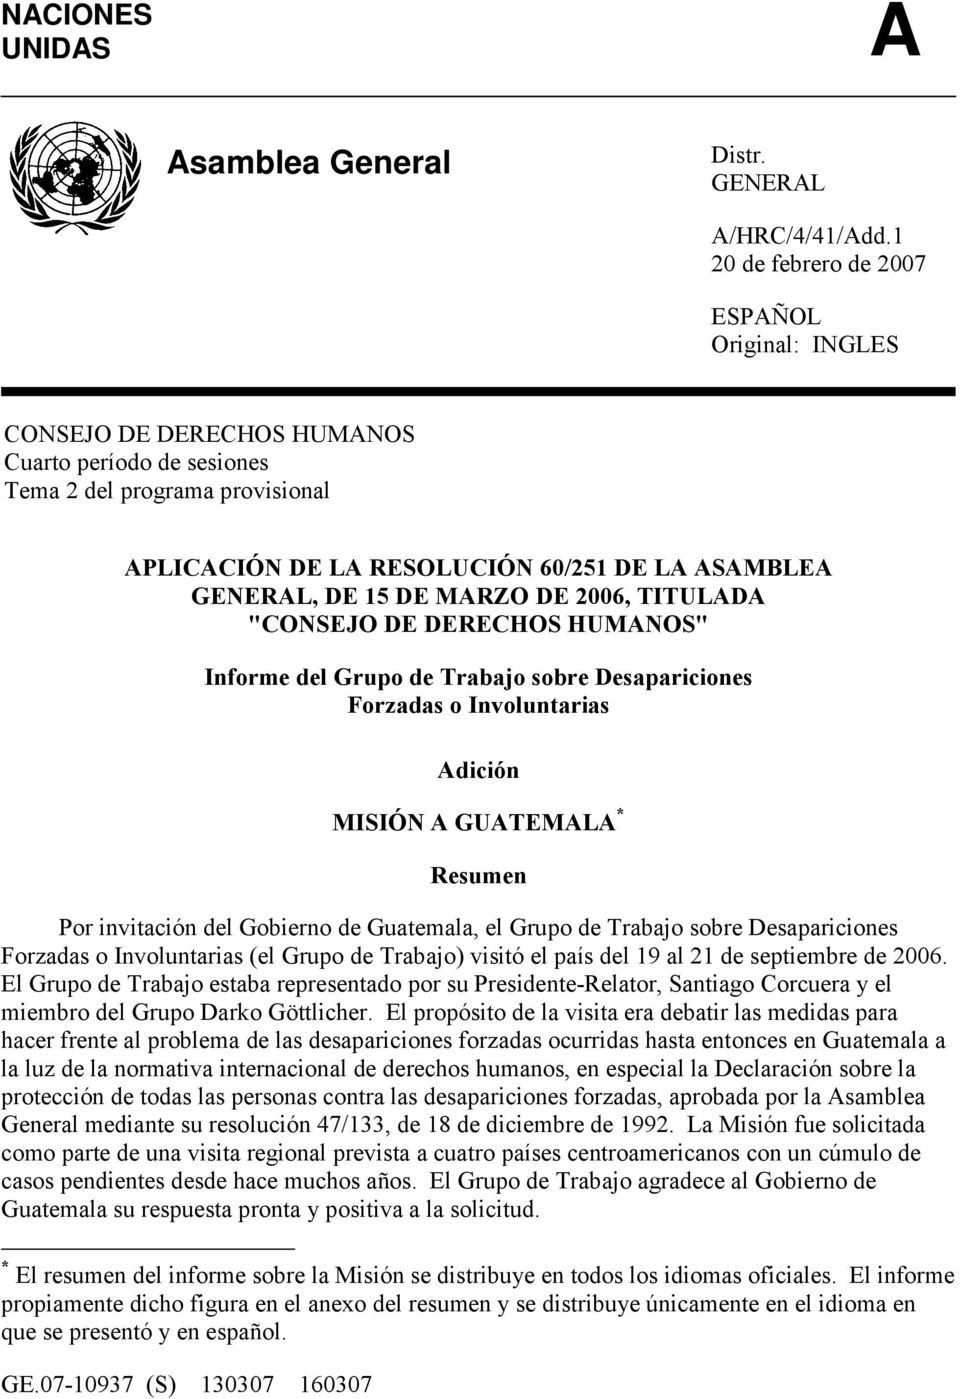 15 DE MARZO DE 2006, TITULADA "CONSEJO DE DERECHOS HUMANOS" Informe del Grupo de Trabajo sobre Desapariciones Forzadas o Involuntarias Adición MISIÓN A GUATEMALA * Resumen Por invitación del Gobierno